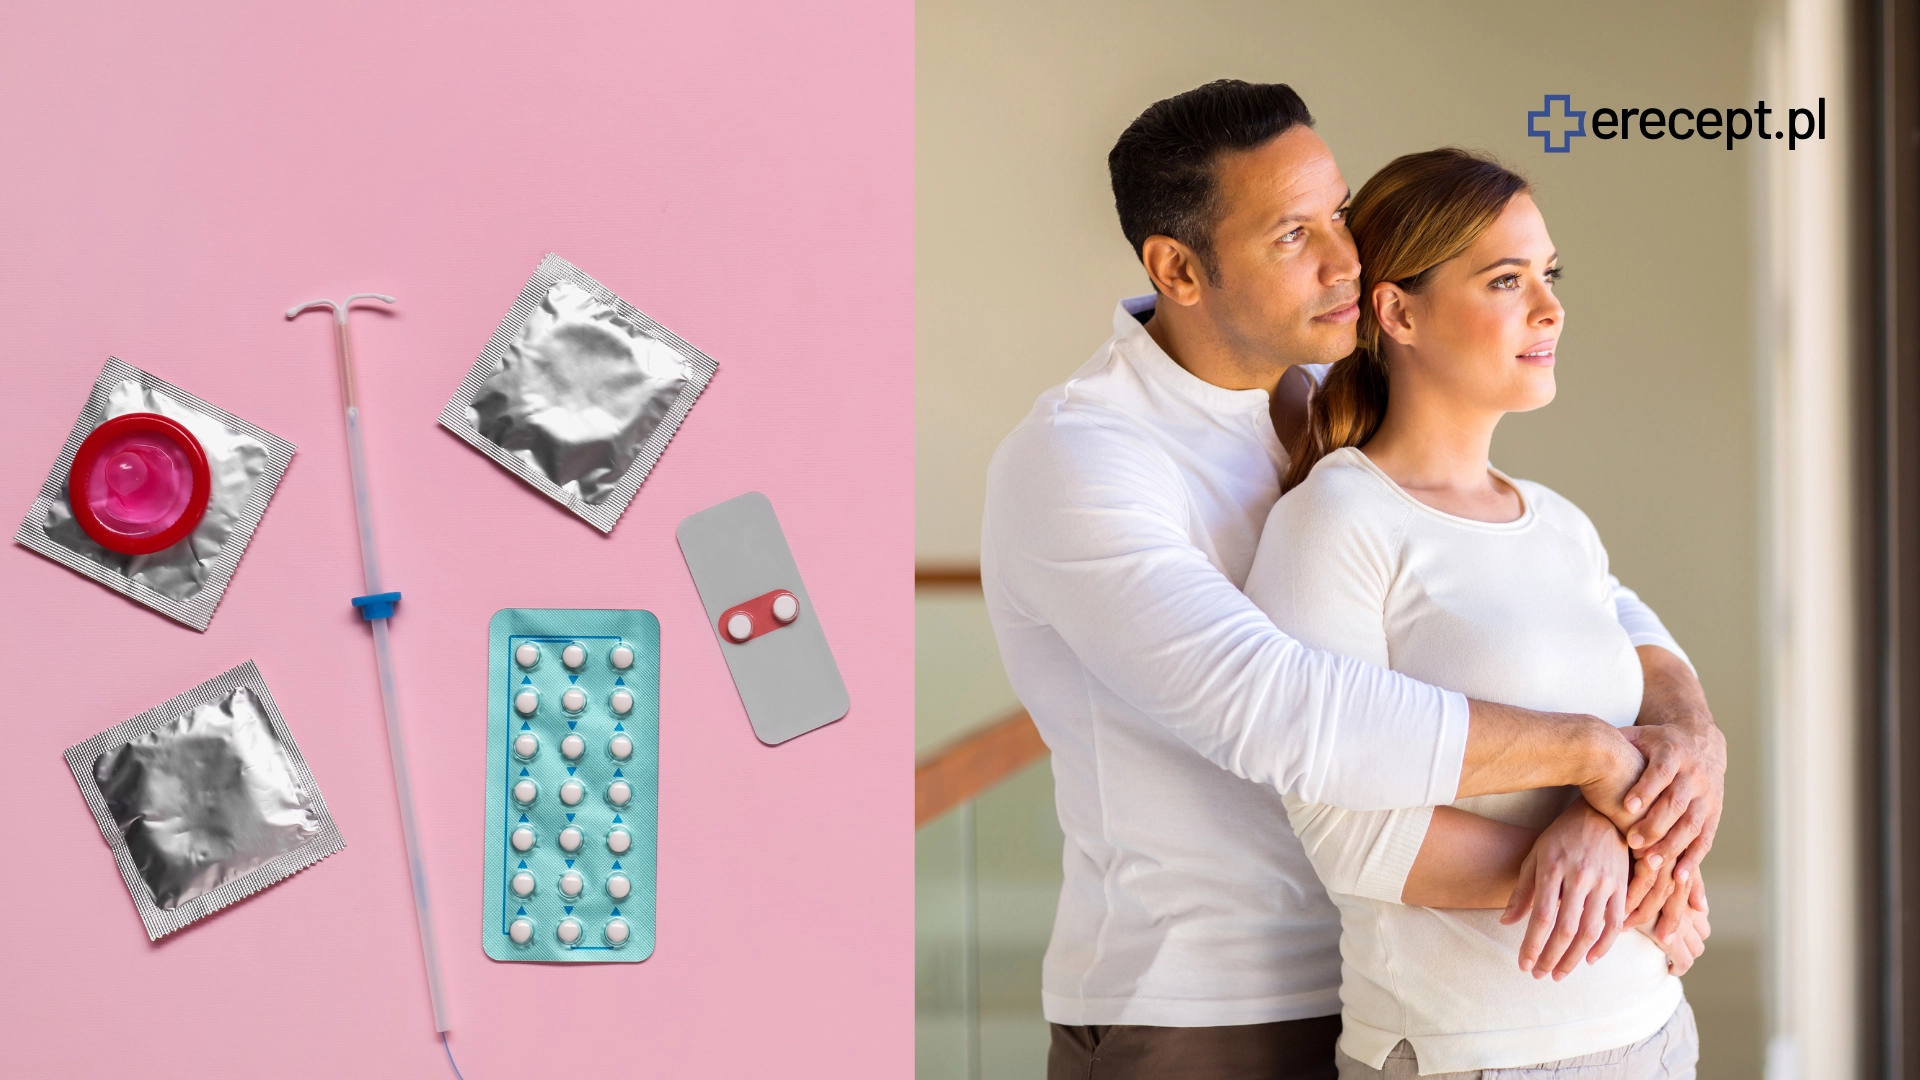 Antykoncepcja dla kobiet i mężczyzn: wskaźnik Pearla  rodzaje  skuteczność  cena  recepta online